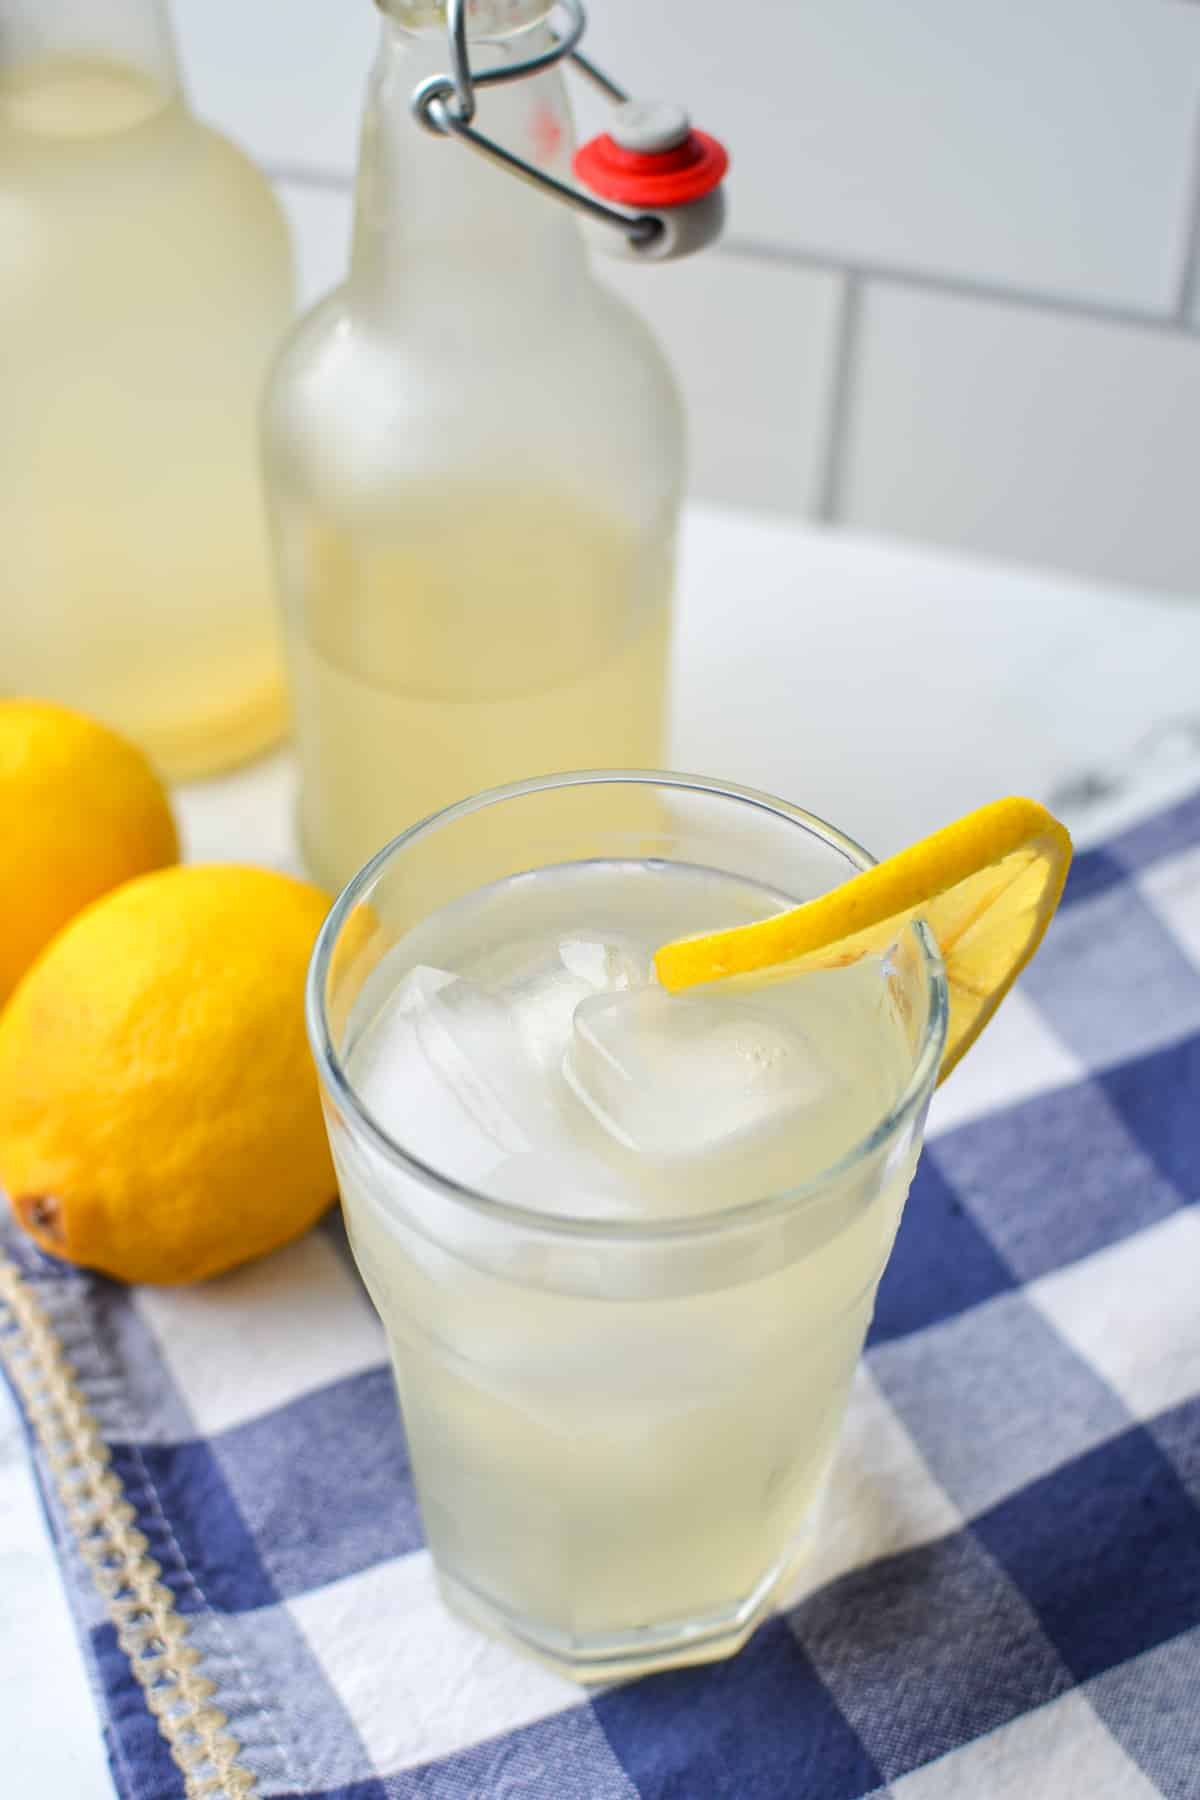 A glass of lemonade with a lemon slice.